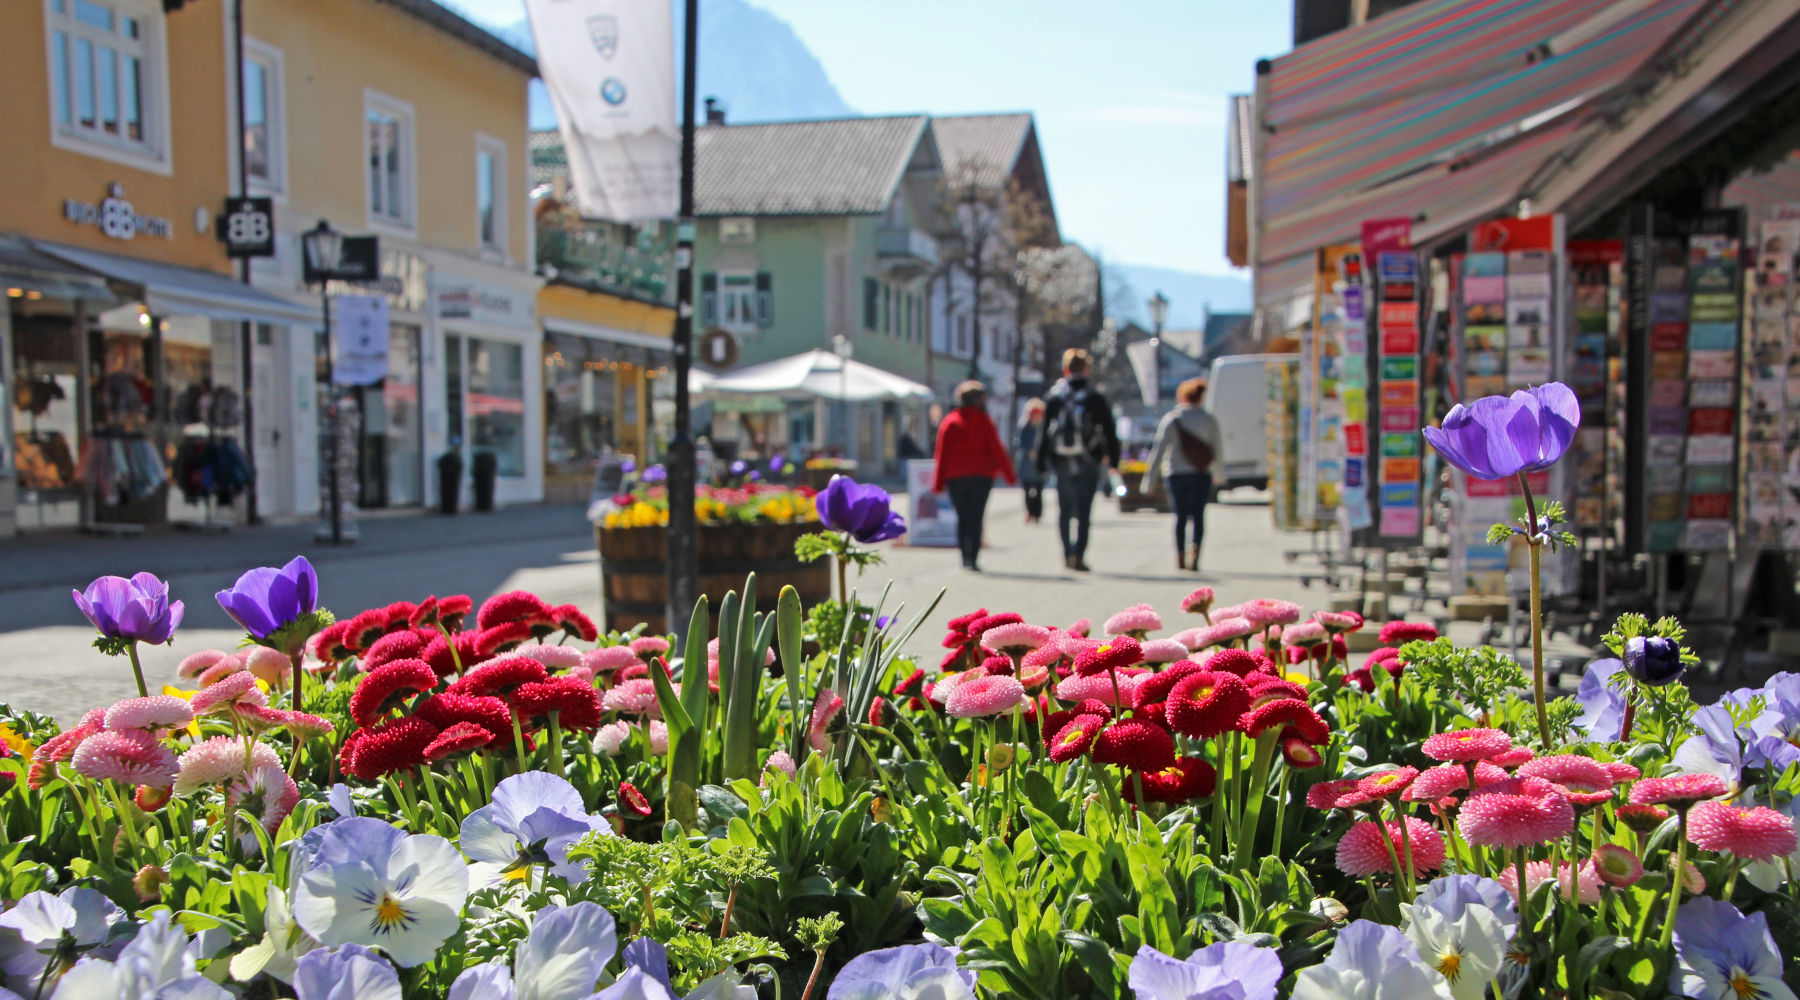 Badersee Blog: An Enjoyable Walk Through Garmisch-Partenkirchen